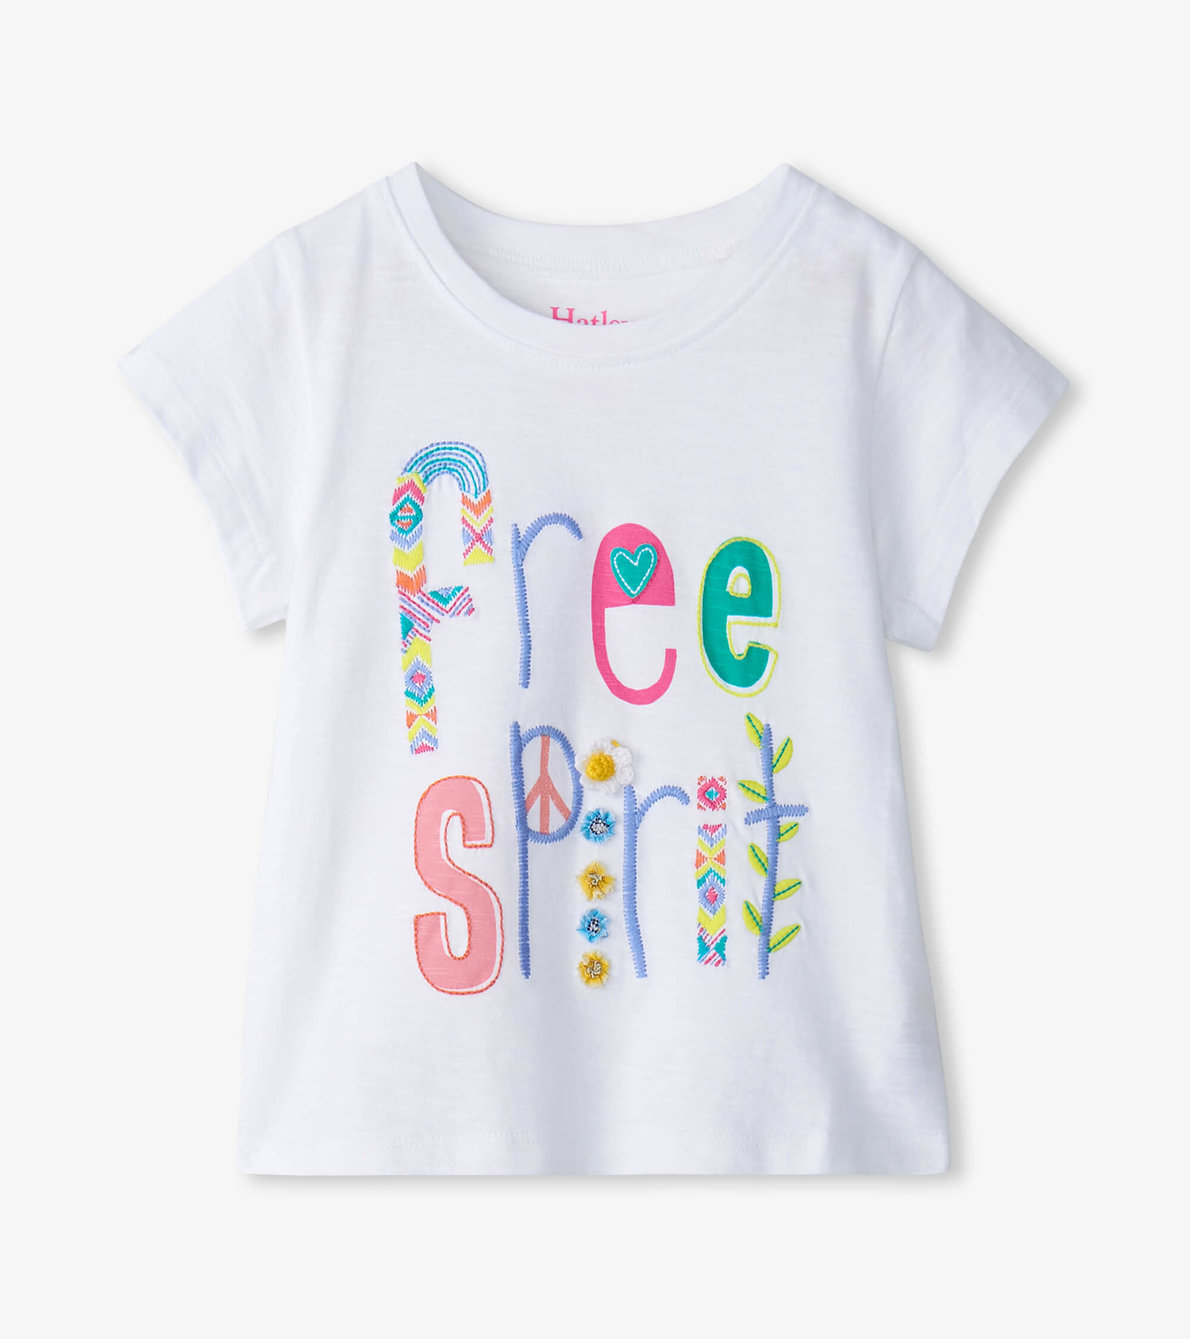 View larger image of Baby & Toddler Girls Free Spirit White Graphic Tee